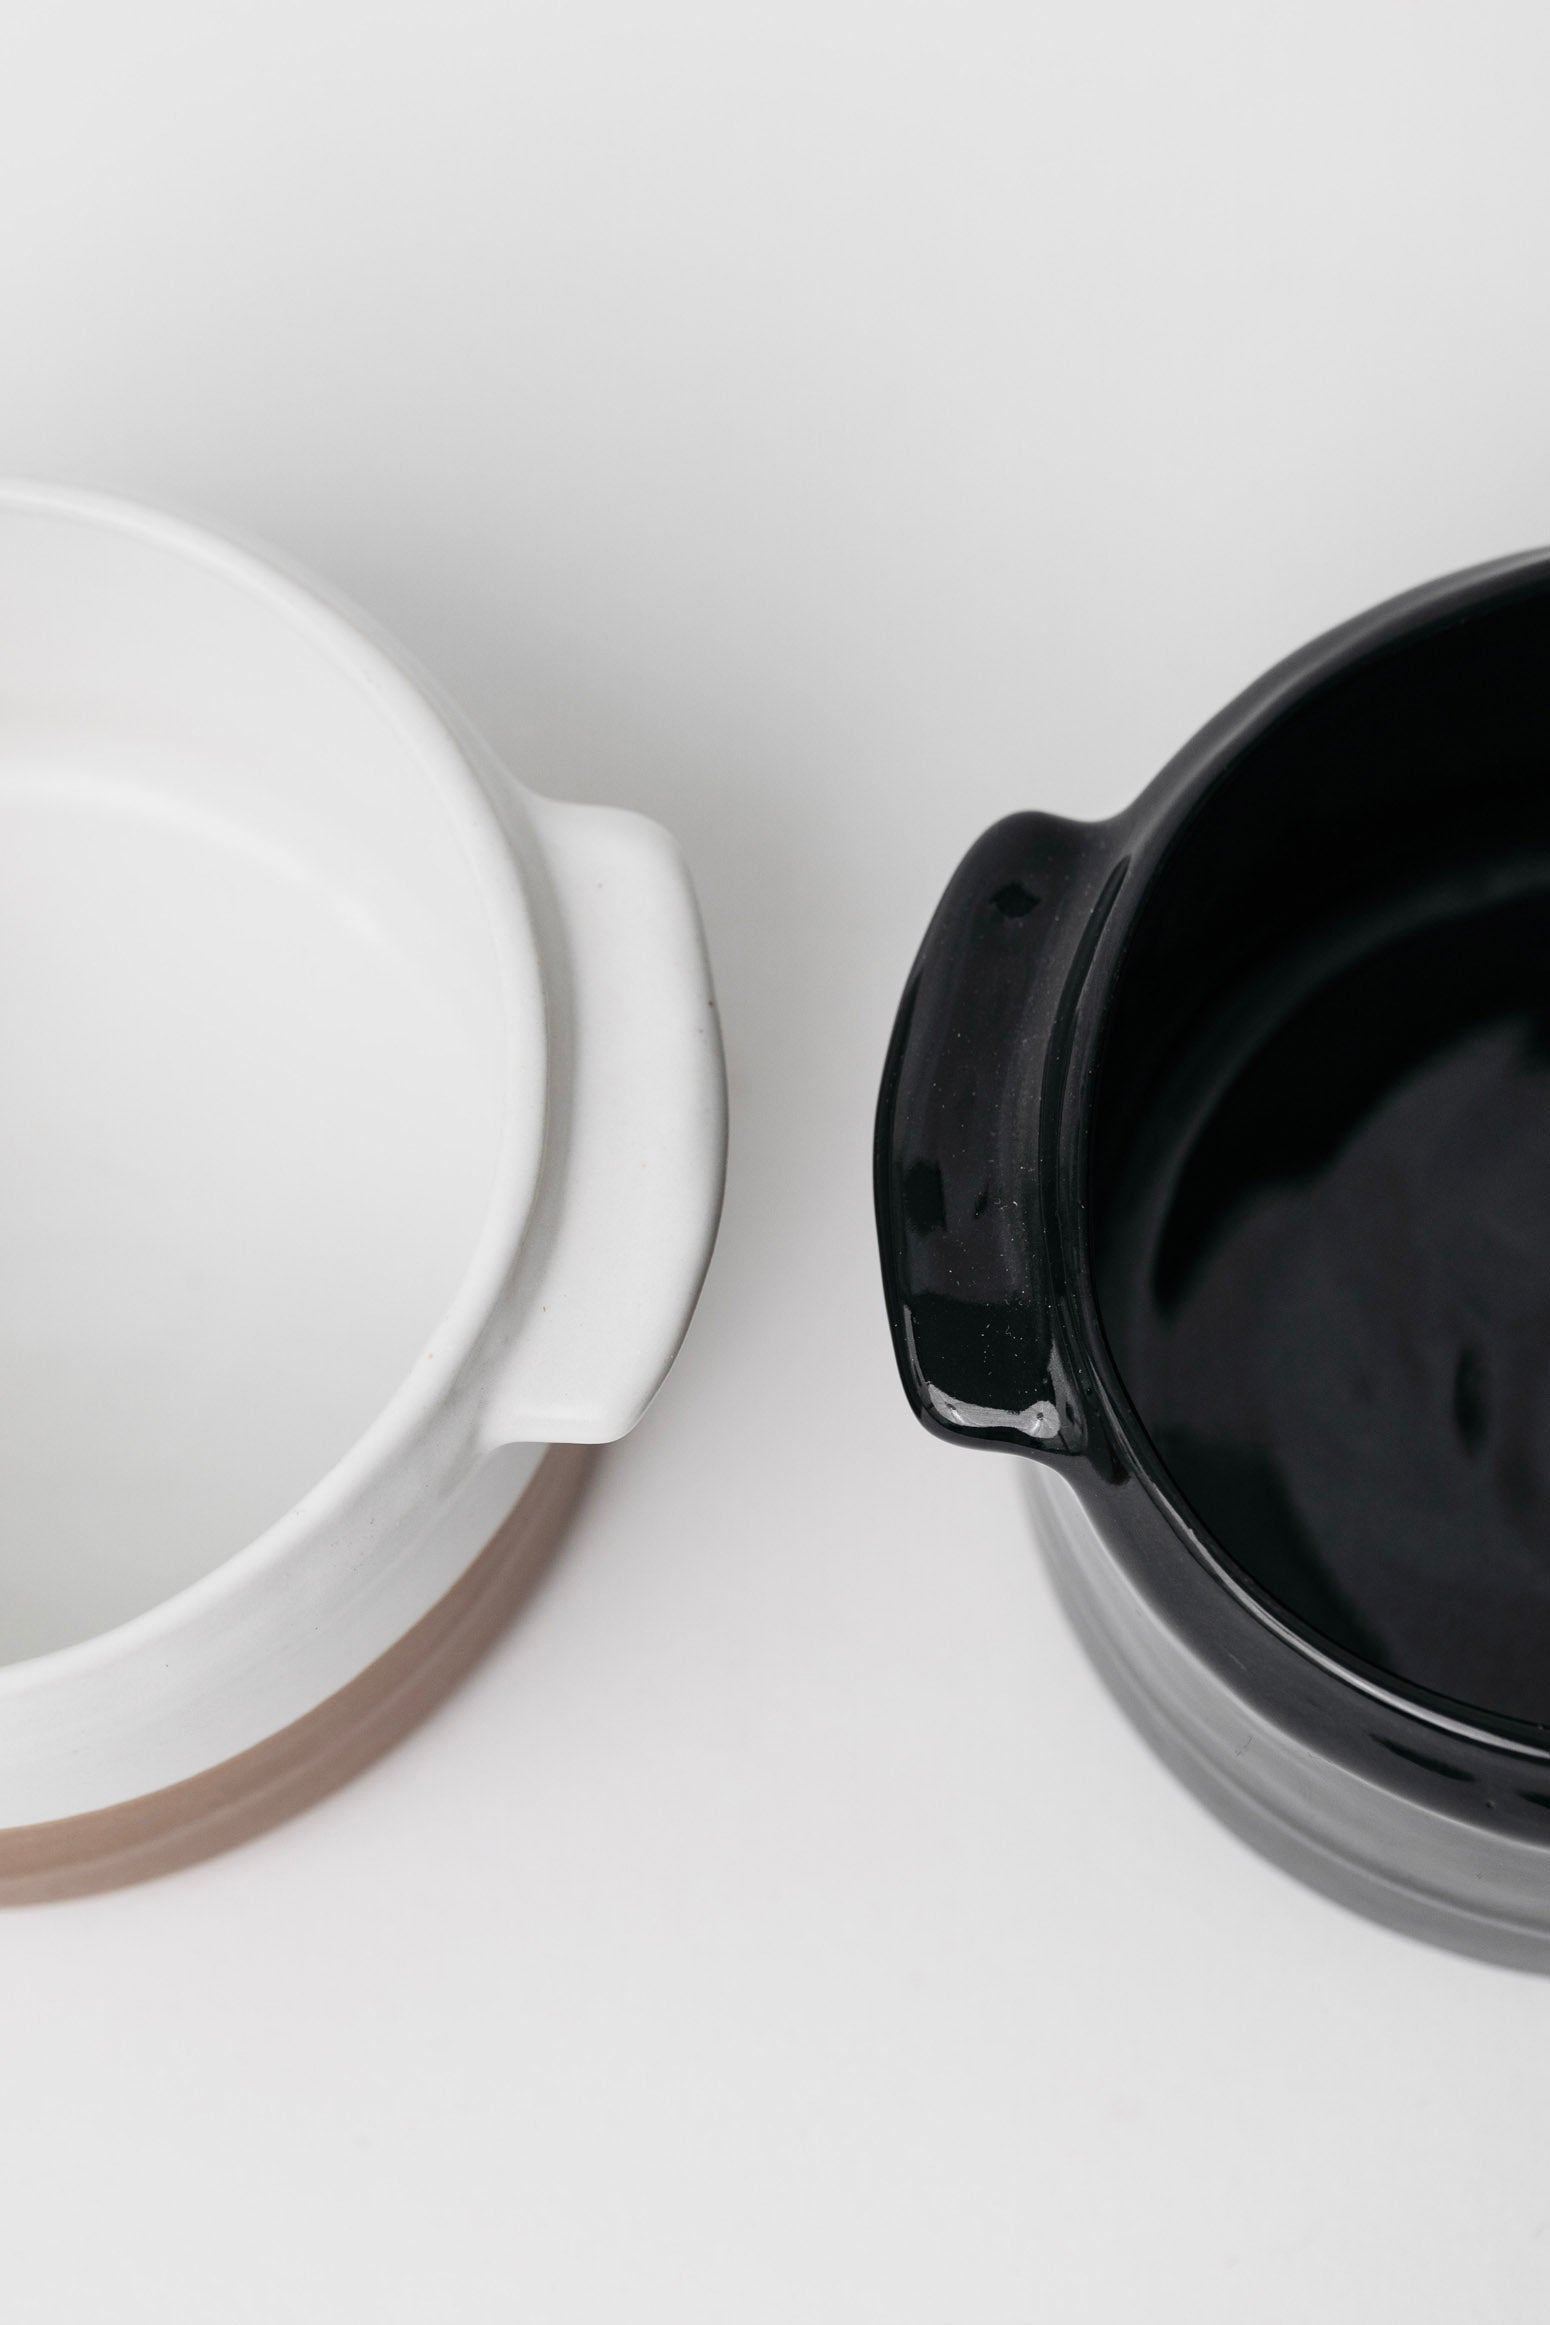 Sable Soup Bowl - Matte Black/Glossy Black - Set of 4